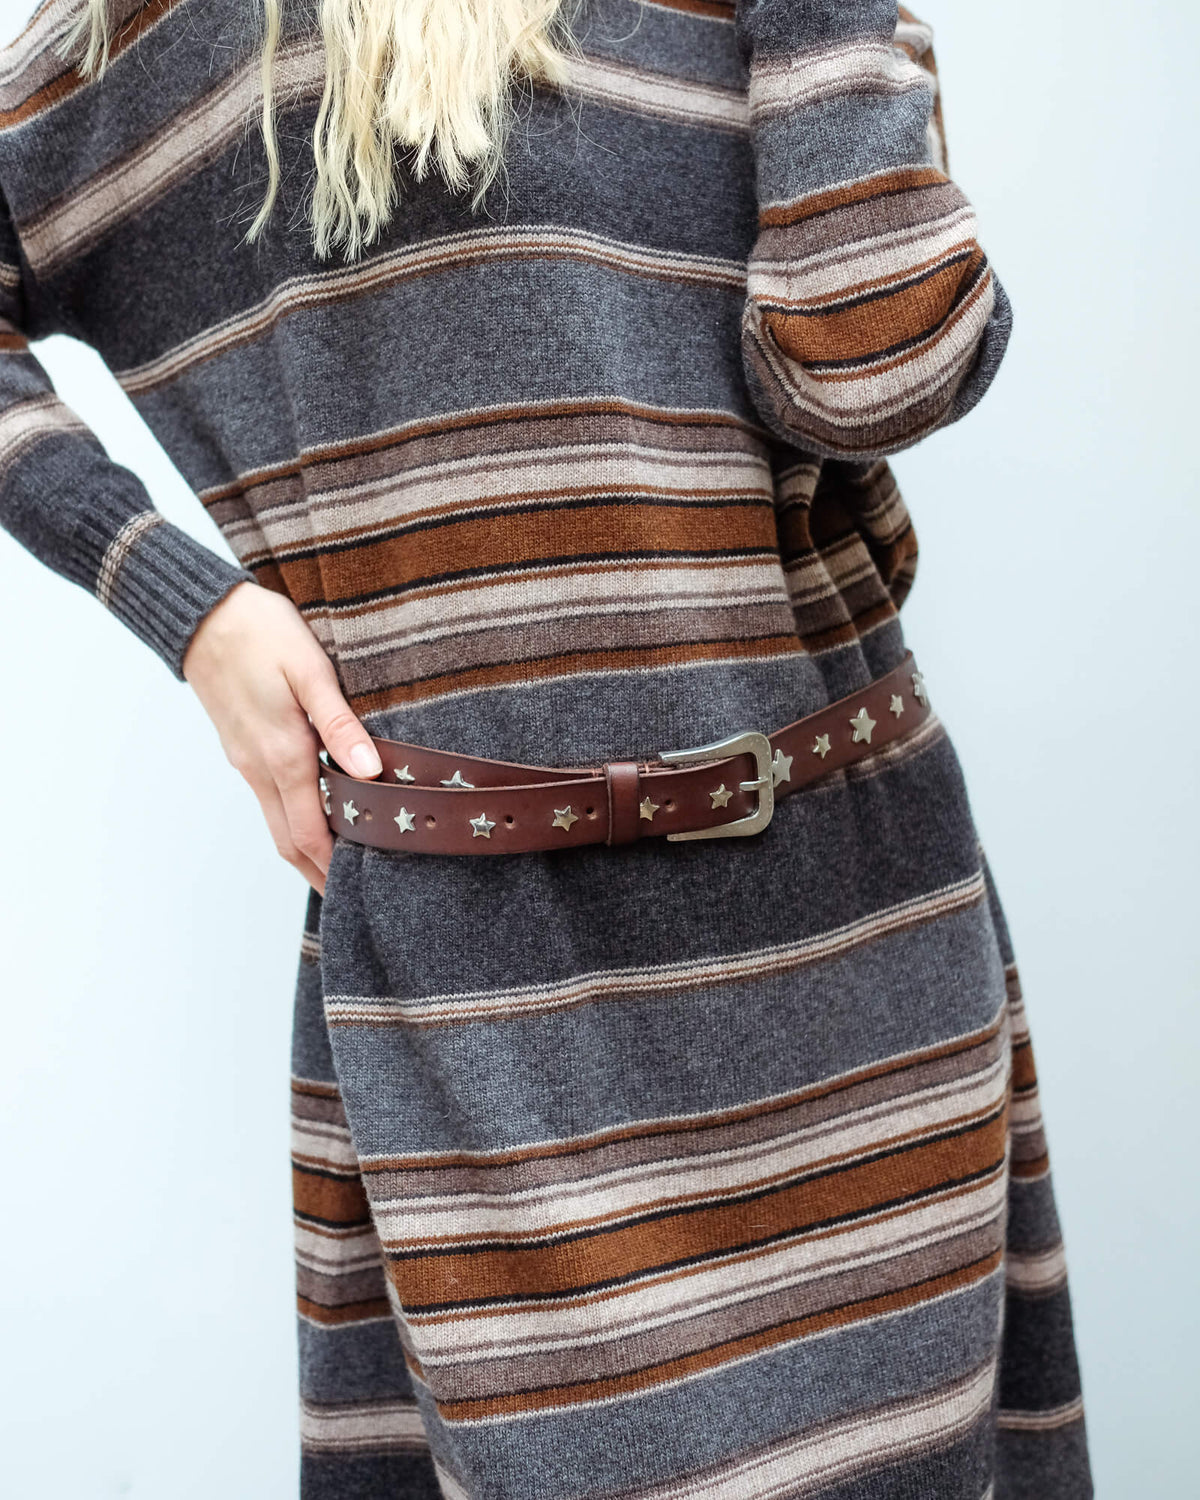 SW Star leather belt in dark brown